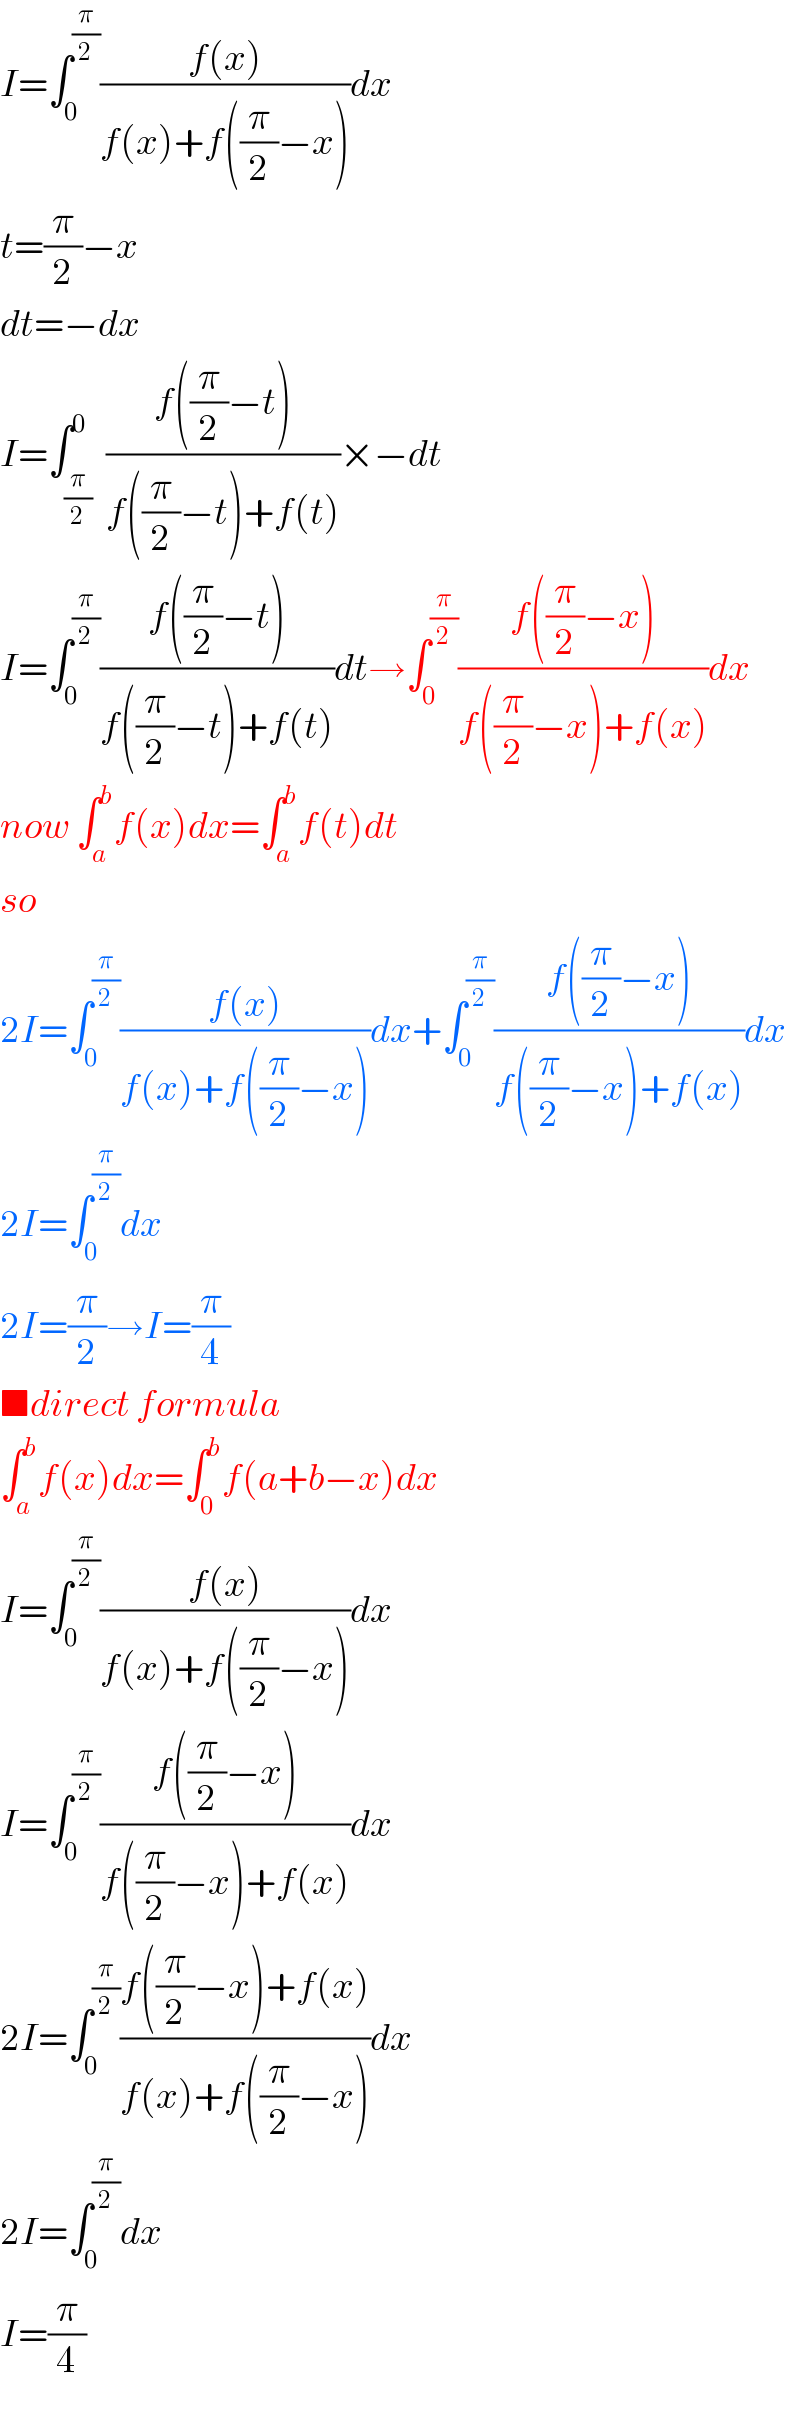 I=∫_0 ^(π/2) ((f(x))/(f(x)+f((π/2)−x)))dx  t=(π/2)−x  dt=−dx  I=∫_(π/2) ^0  ((f((π/2)−t))/(f((π/2)−t)+f(t)))×−dt  I=∫_0 ^(π/2) ((f((π/2)−t))/(f((π/2)−t)+f(t)))dt→∫_0 ^(π/2) ((f((π/2)−x))/(f((π/2)−x)+f(x)))dx  now ∫_a ^b f(x)dx=∫_a ^b f(t)dt  so  2I=∫_0 ^(π/2) ((f(x))/(f(x)+f((π/2)−x)))dx+∫_0 ^(π/2) ((f((π/2)−x))/(f((π/2)−x)+f(x)))dx  2I=∫_0 ^(π/2) dx  2I=(π/2)→I=(π/4)  ■direct formula  ∫_a ^b f(x)dx=∫_0 ^b f(a+b−x)dx  I=∫_0 ^(π/2) ((f(x))/(f(x)+f((π/2)−x)))dx  I=∫_0 ^(π/2) ((f((π/2)−x))/(f((π/2)−x)+f(x)))dx  2I=∫_0 ^(π/2) ((f((π/2)−x)+f(x))/(f(x)+f((π/2)−x)))dx  2I=∫_0 ^(π/2) dx  I=(π/4)  